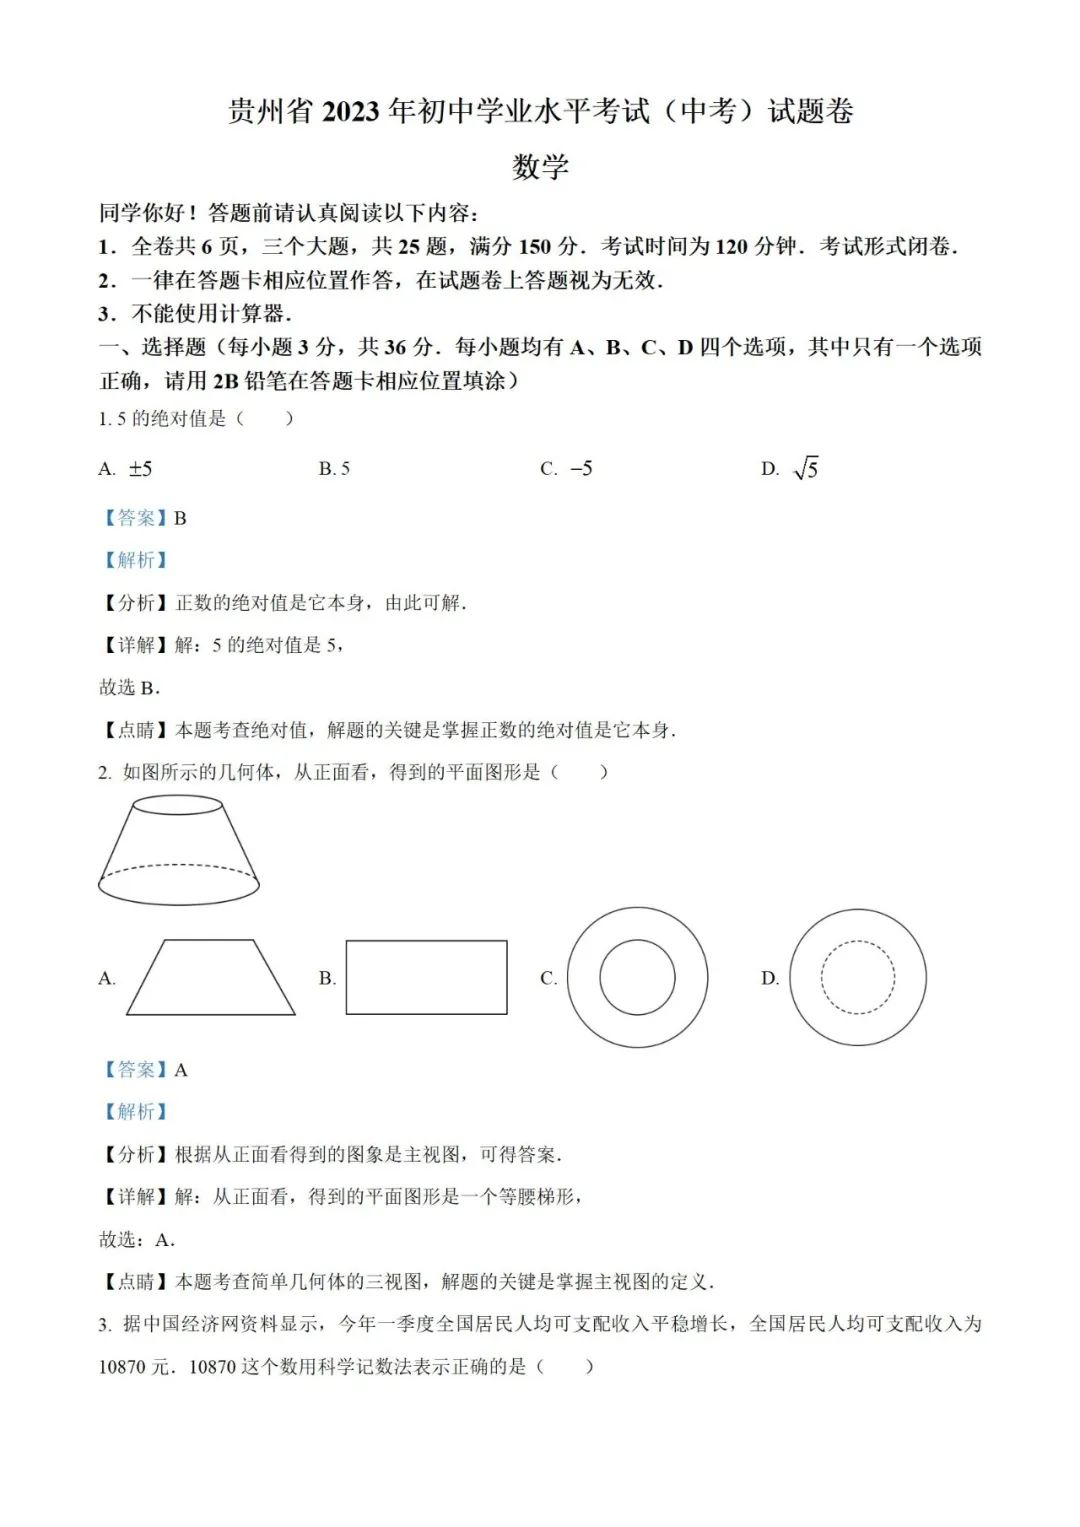 【中考真题】2023年贵州省中考数学真题 (带答案解析) 第9张